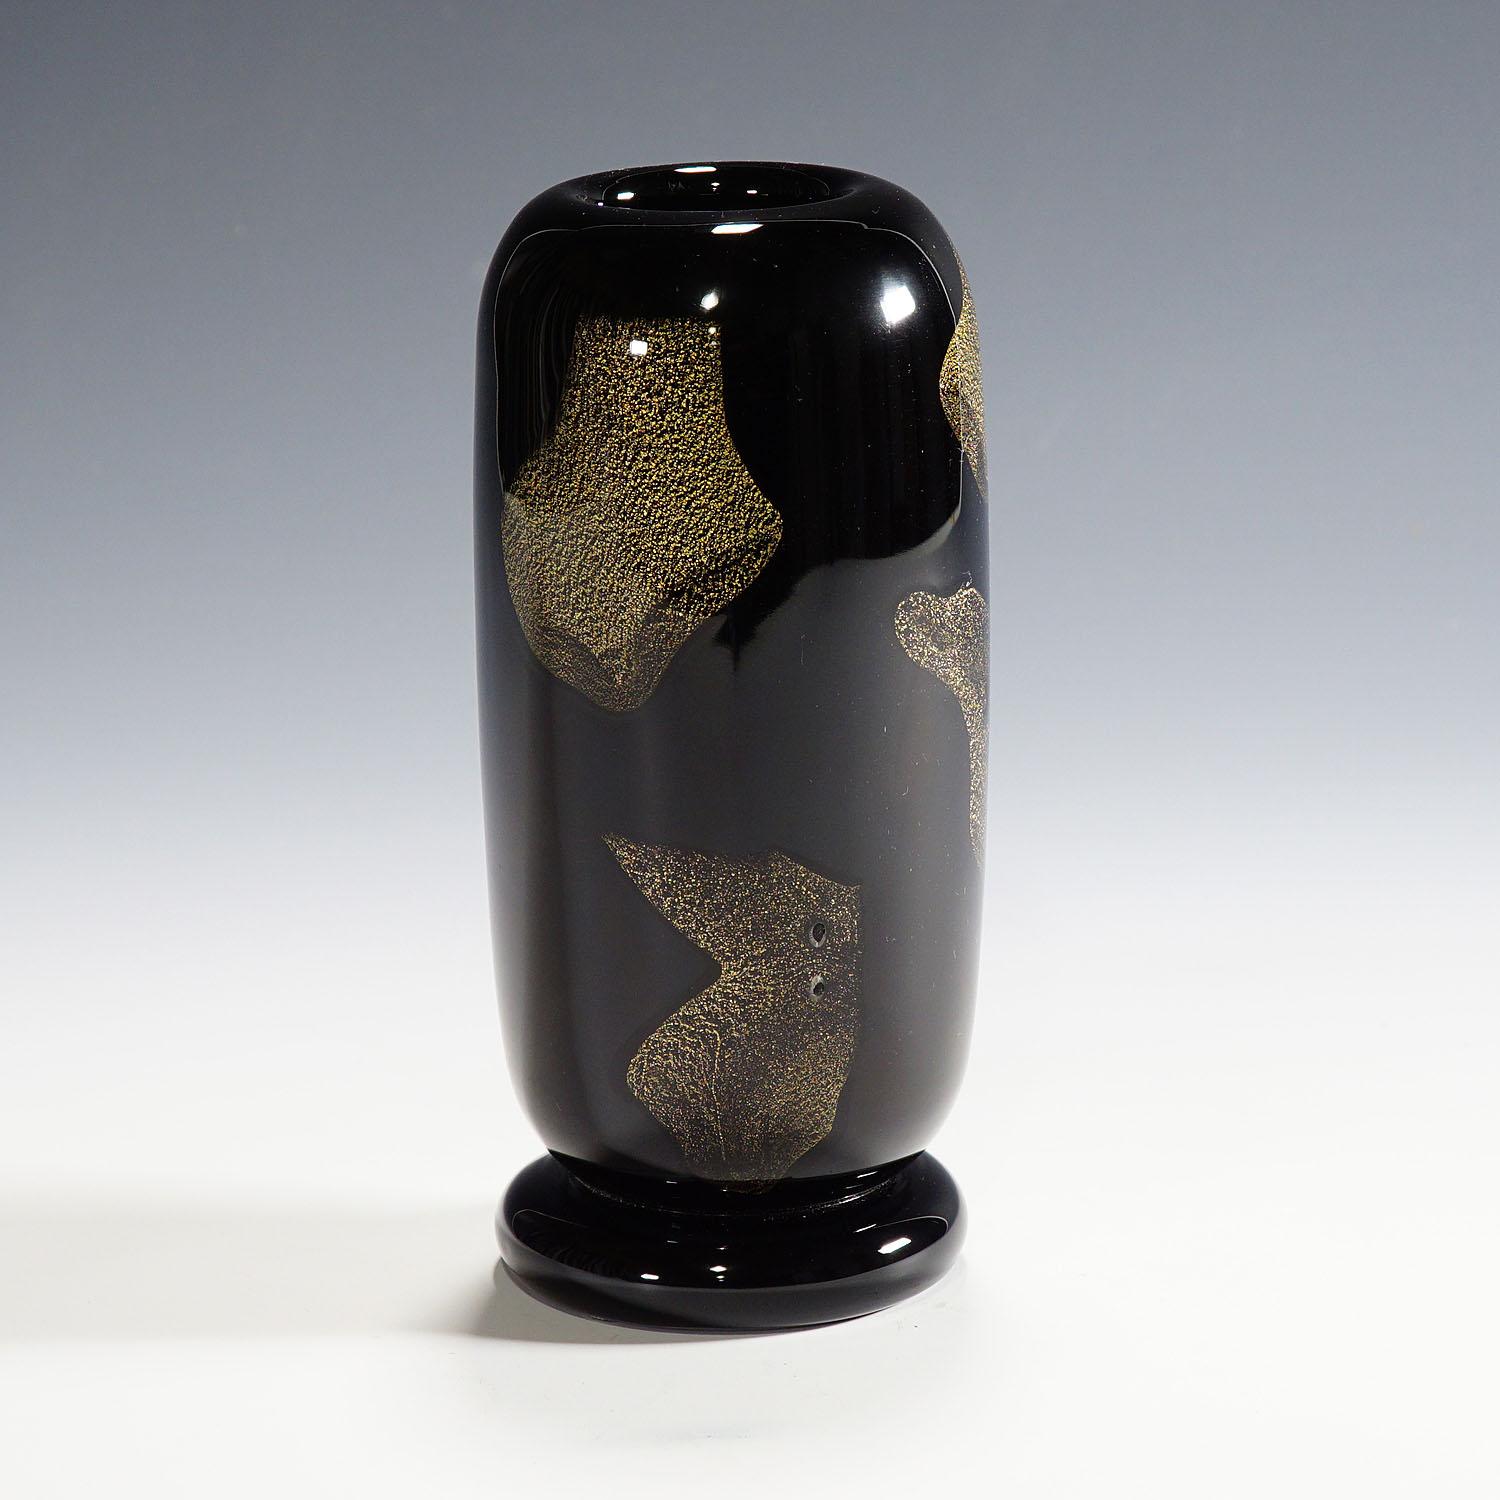 A rare Murano art glass vase designed by Archimede Seguso for Vetreria Artistica Archimede Seguso in 1951. Clear and 